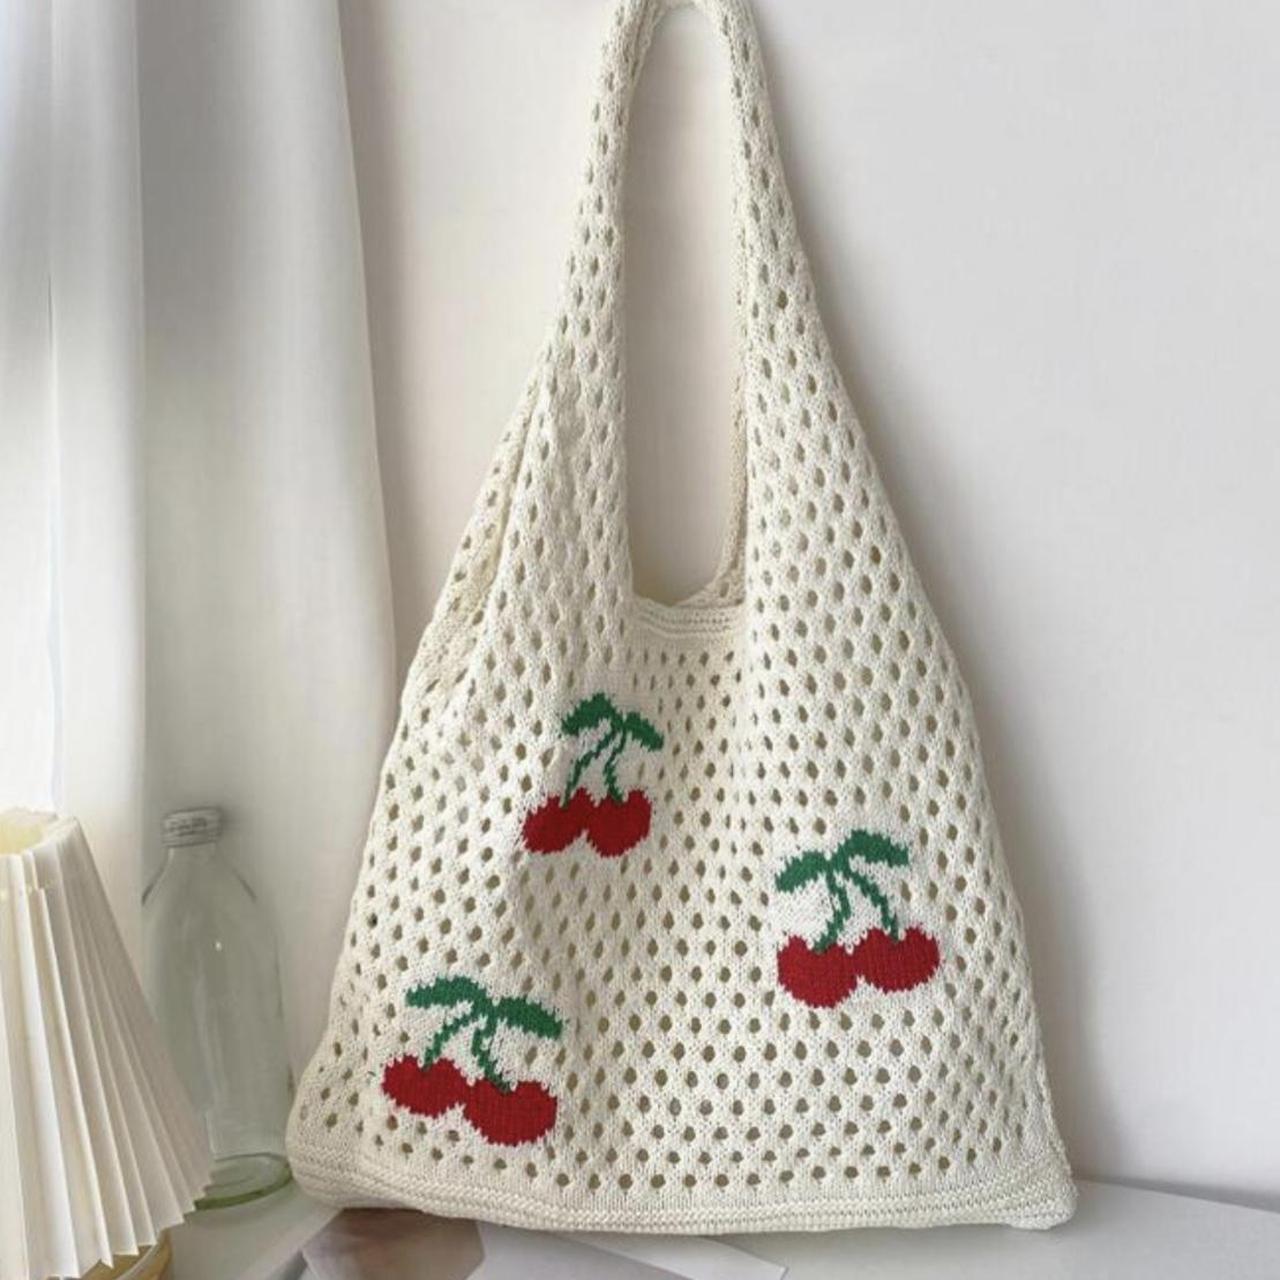 Crochet heart purse ❤️ powerpuff girls inspired! - Depop